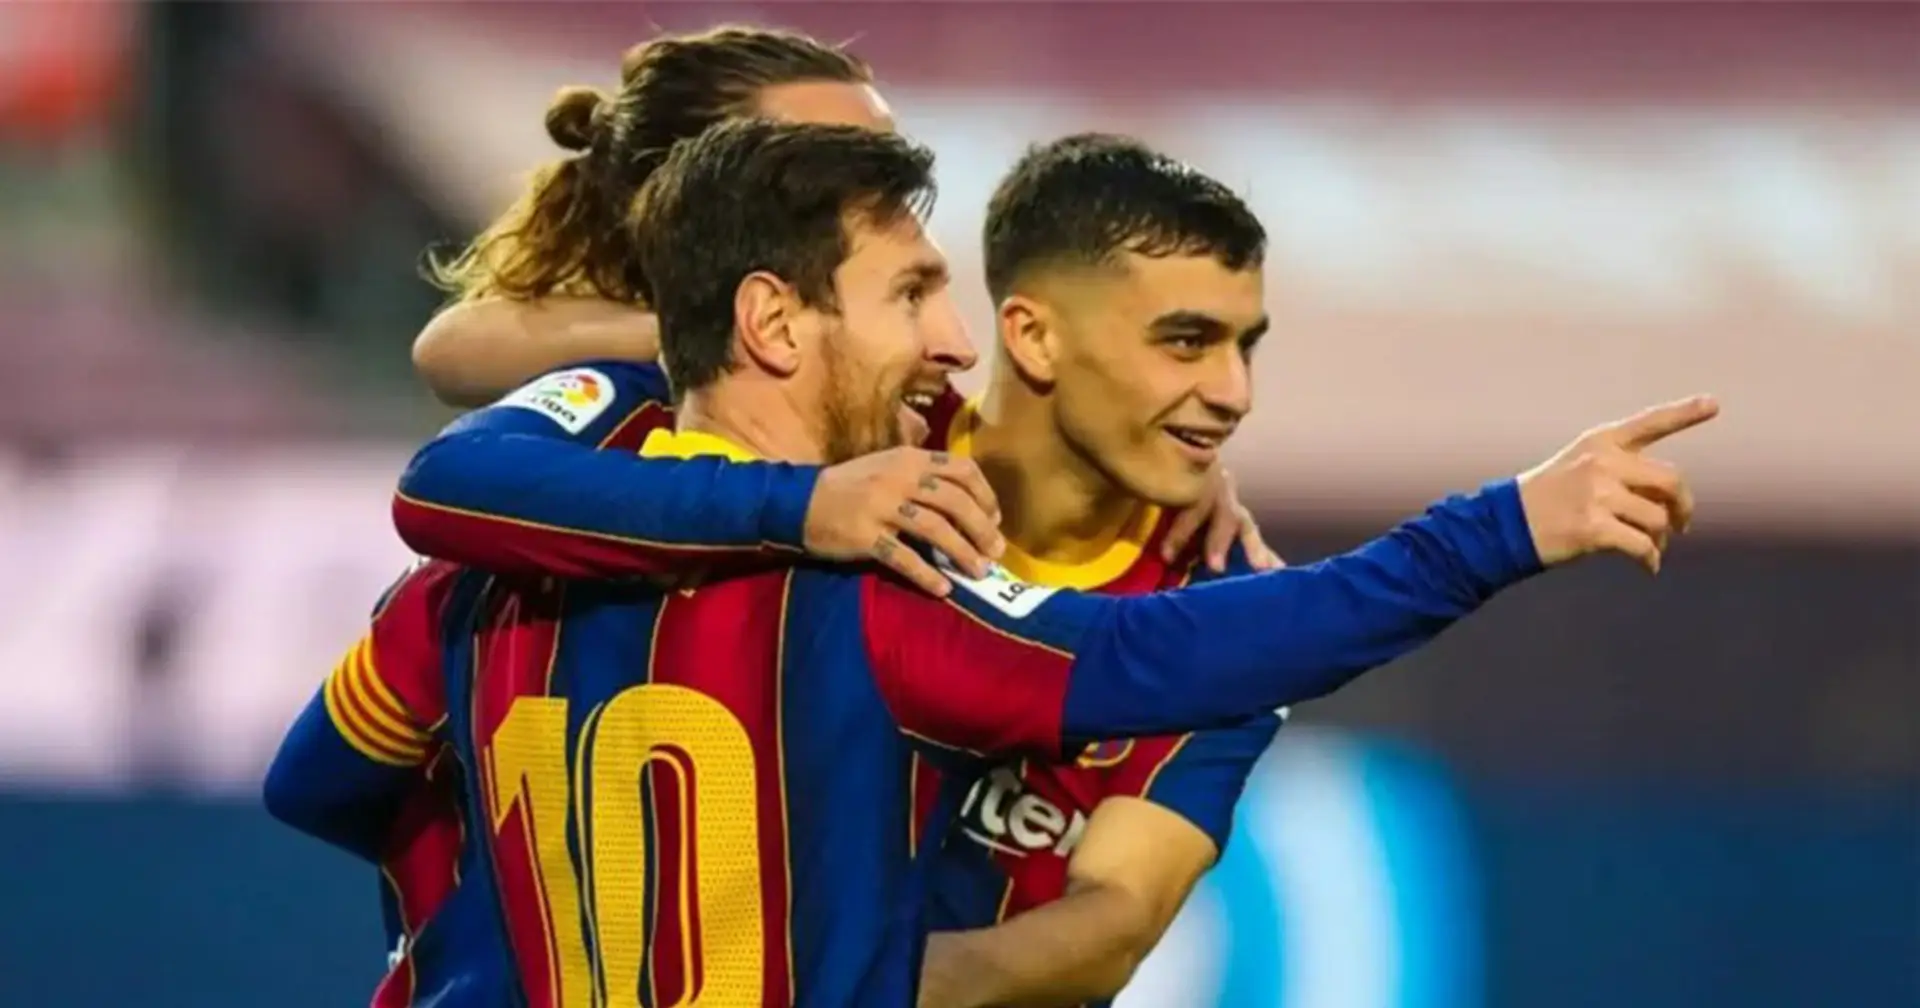 Messi et 2 autres joueurs du Barça font partie du top 10 des leaders de la Liga pour les passes décisives attendues en 2020/21